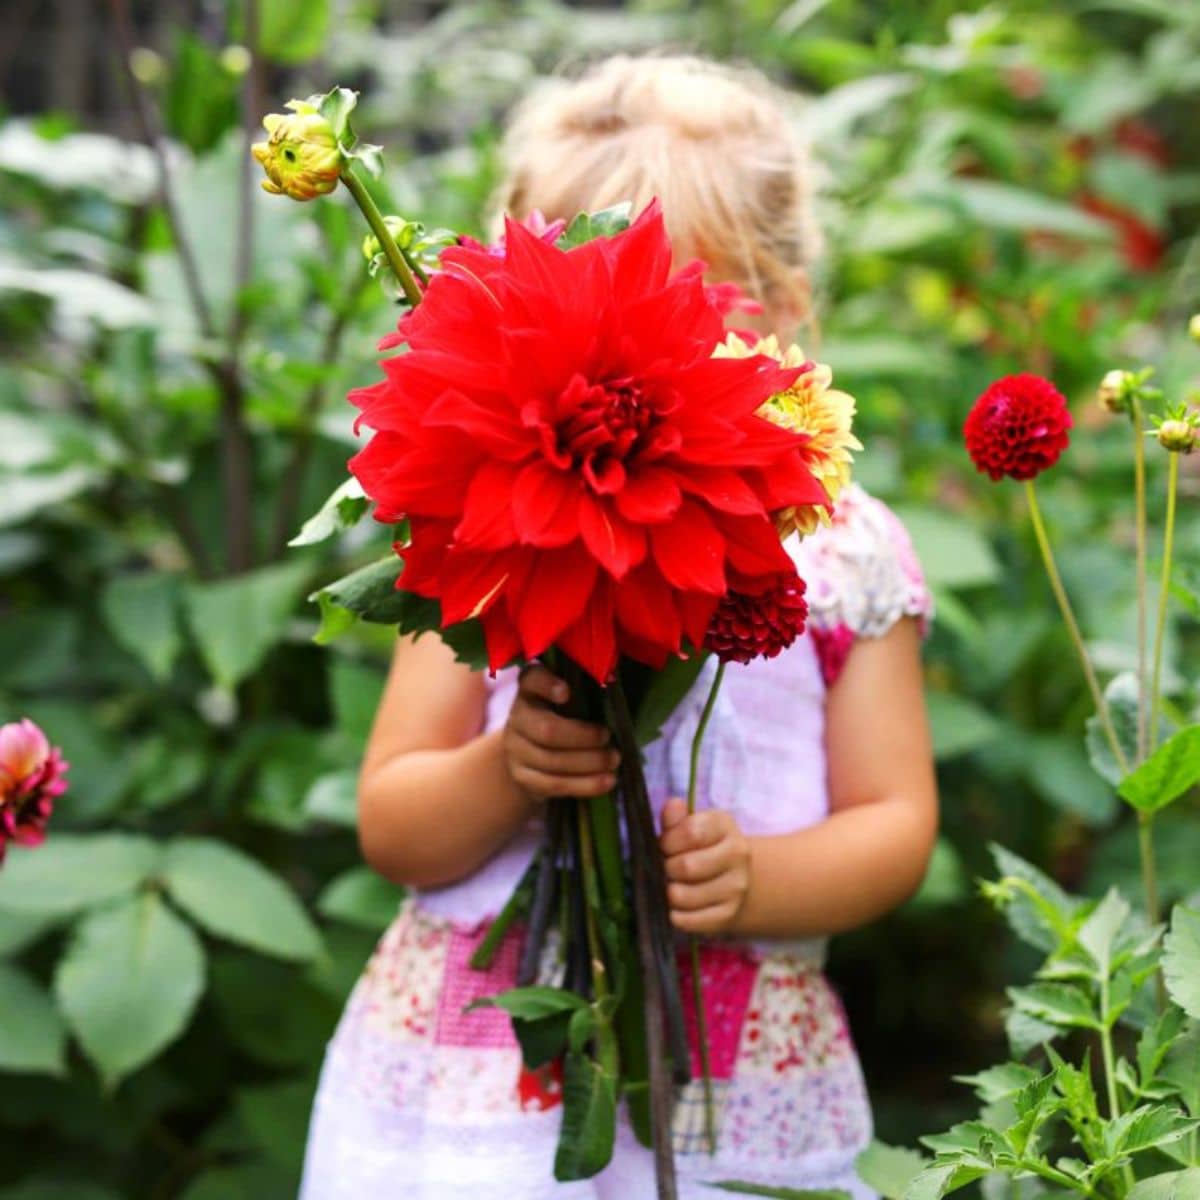 A little girl holds a dahlia bouquet.